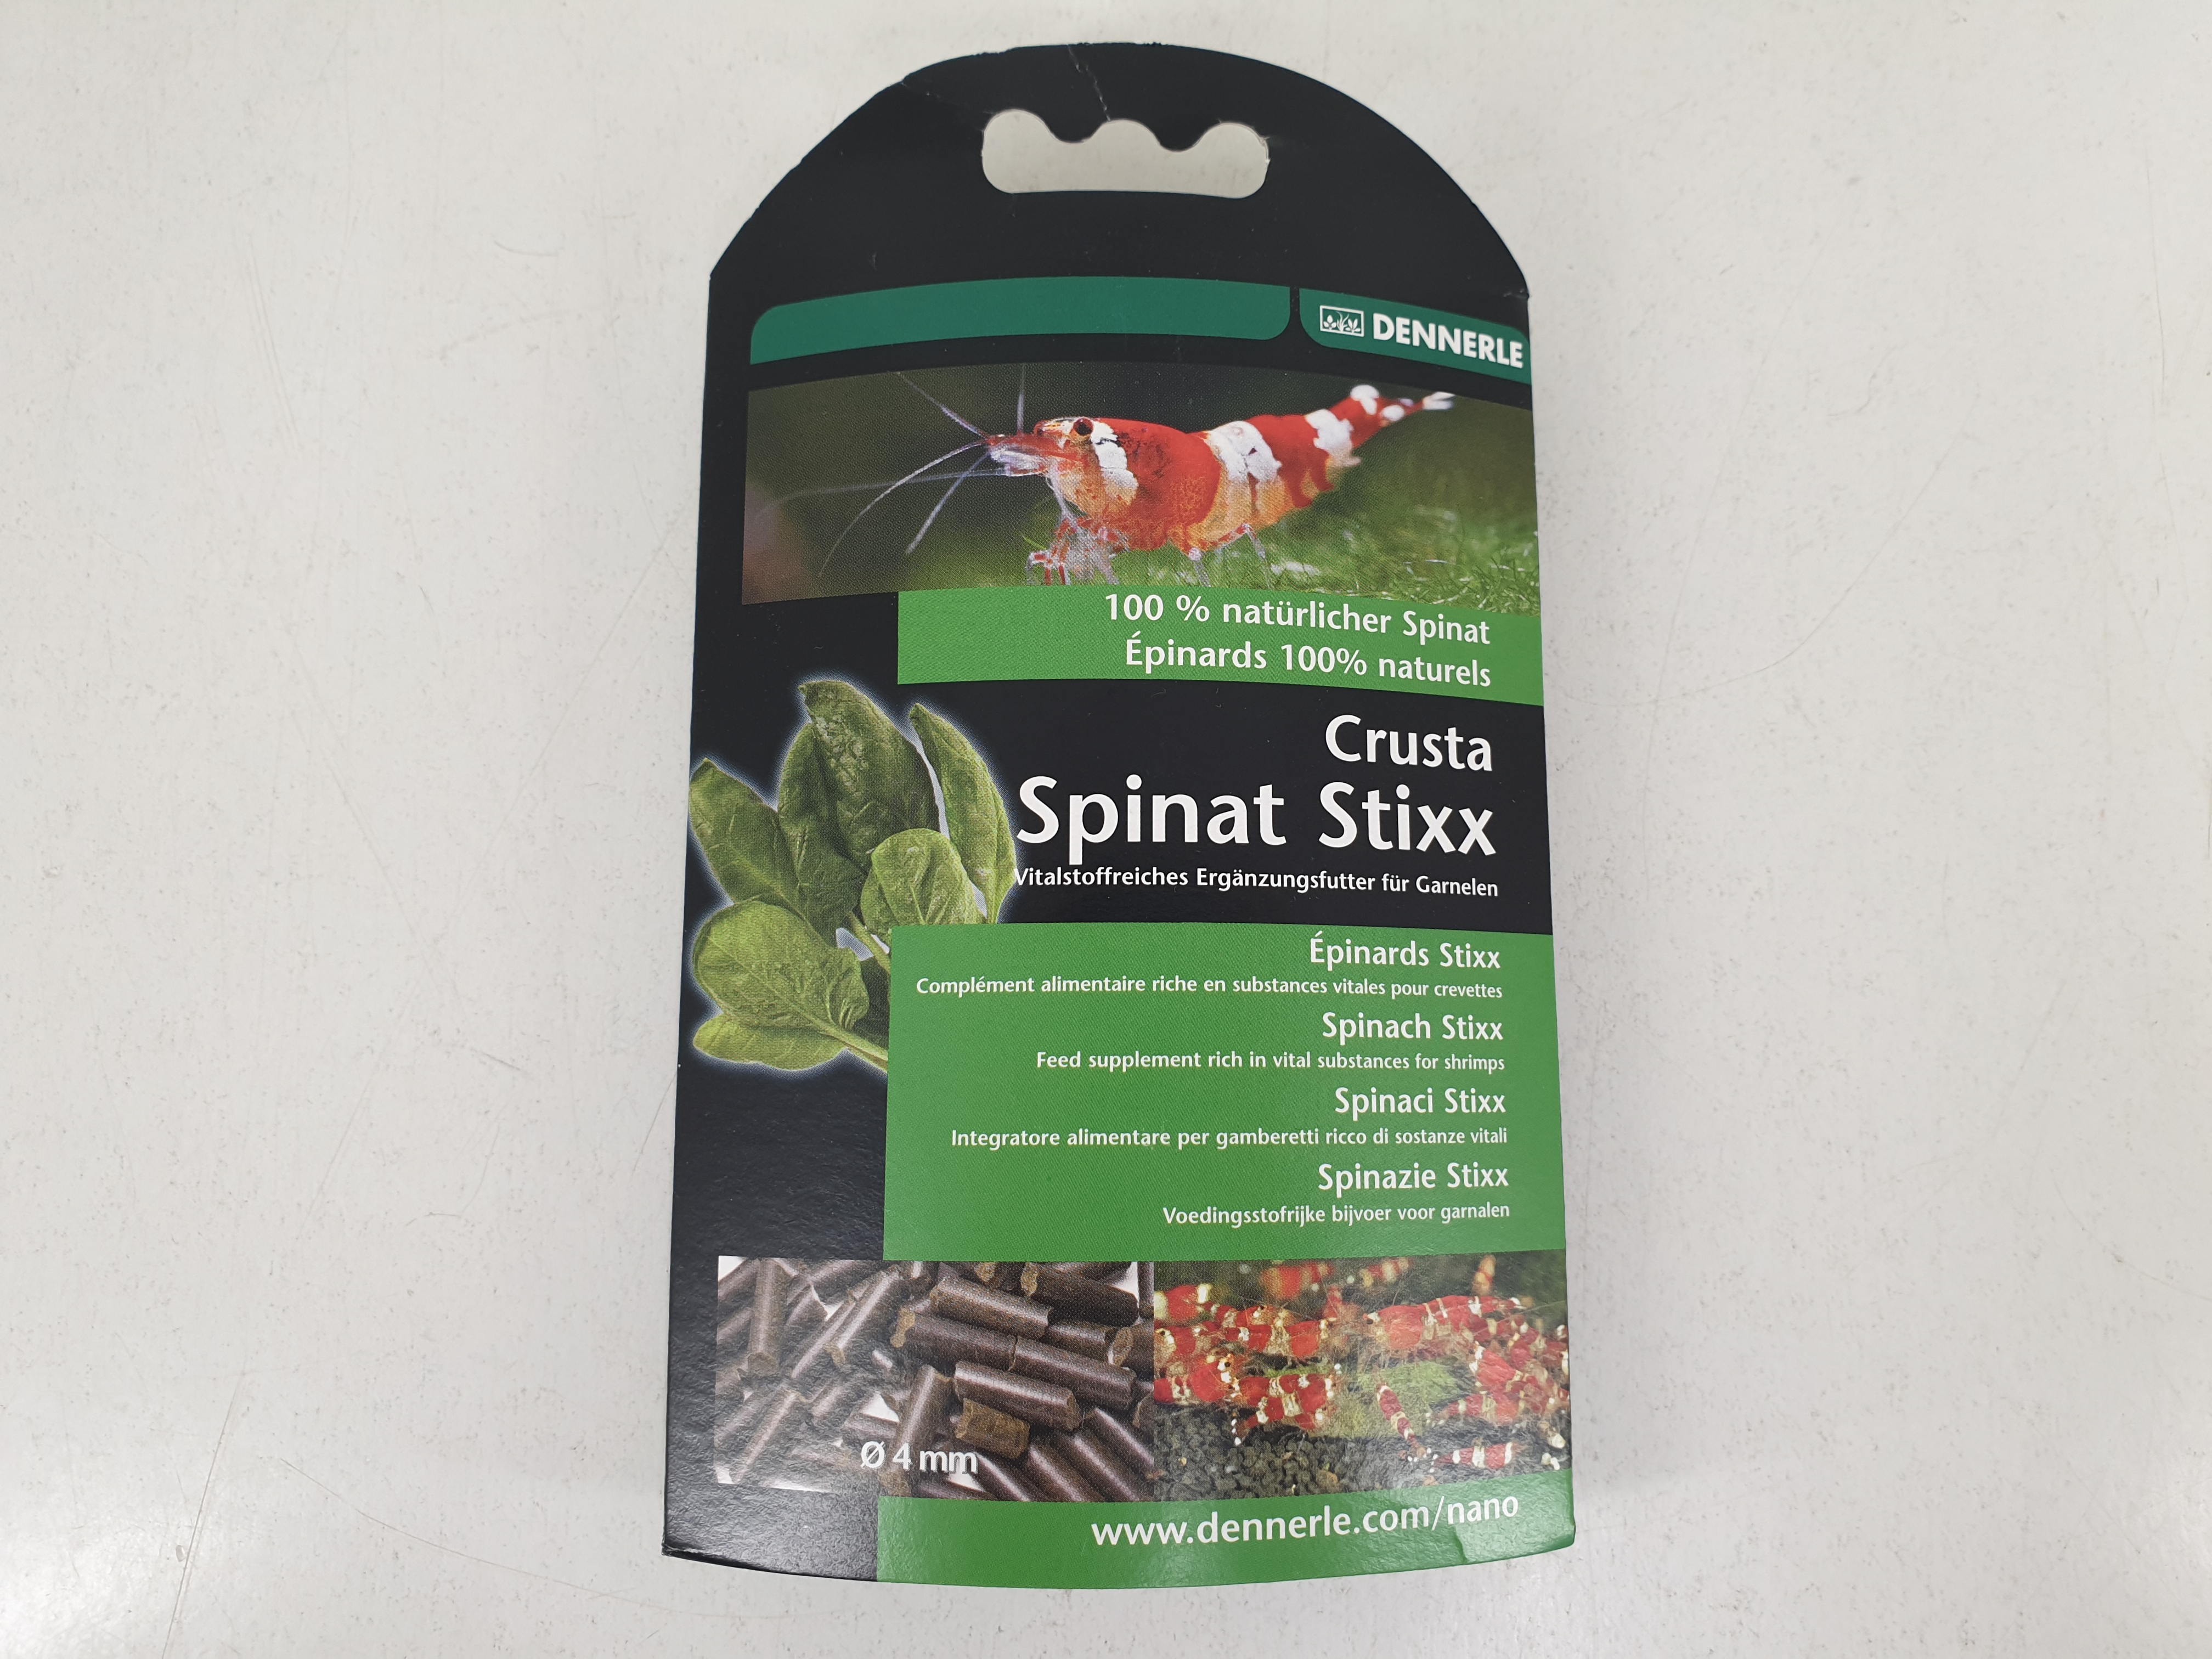 Dennerle Crusta Spinat Stixx - vitalstoffreiche Spinat-Sticks für Garnelen 30g